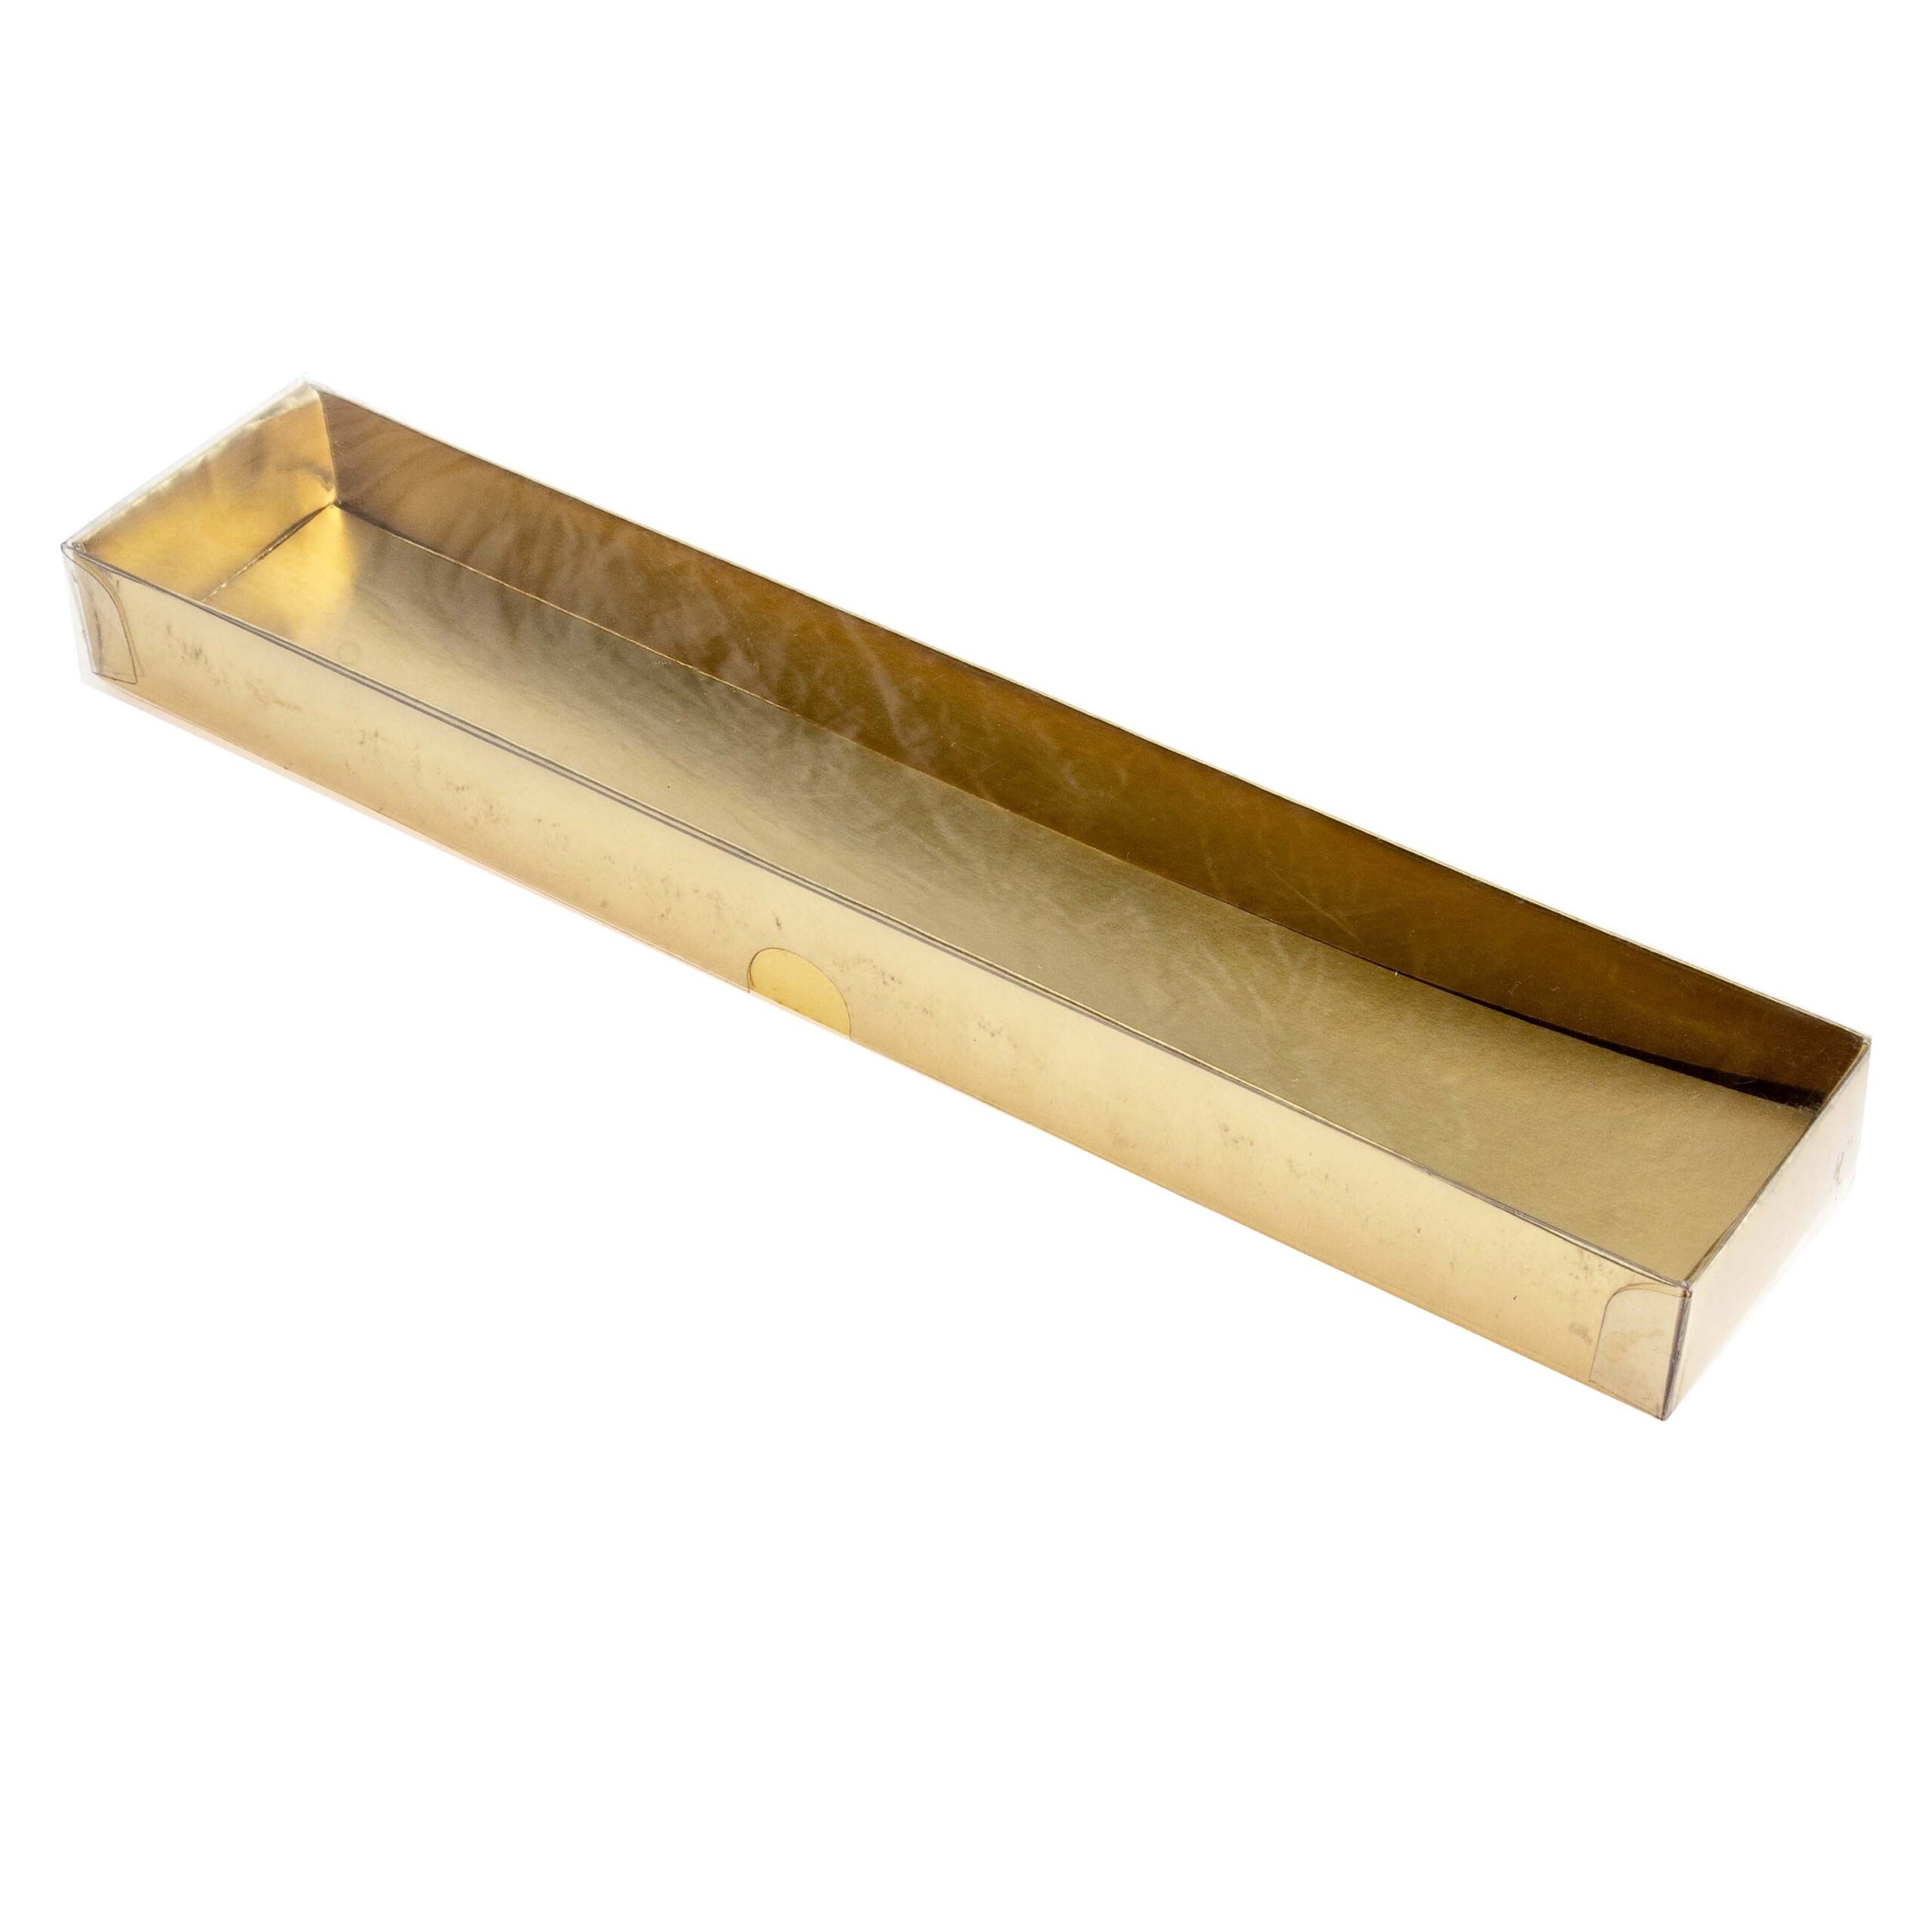 PVC BOX GOLD
BASE 317x28x34mm